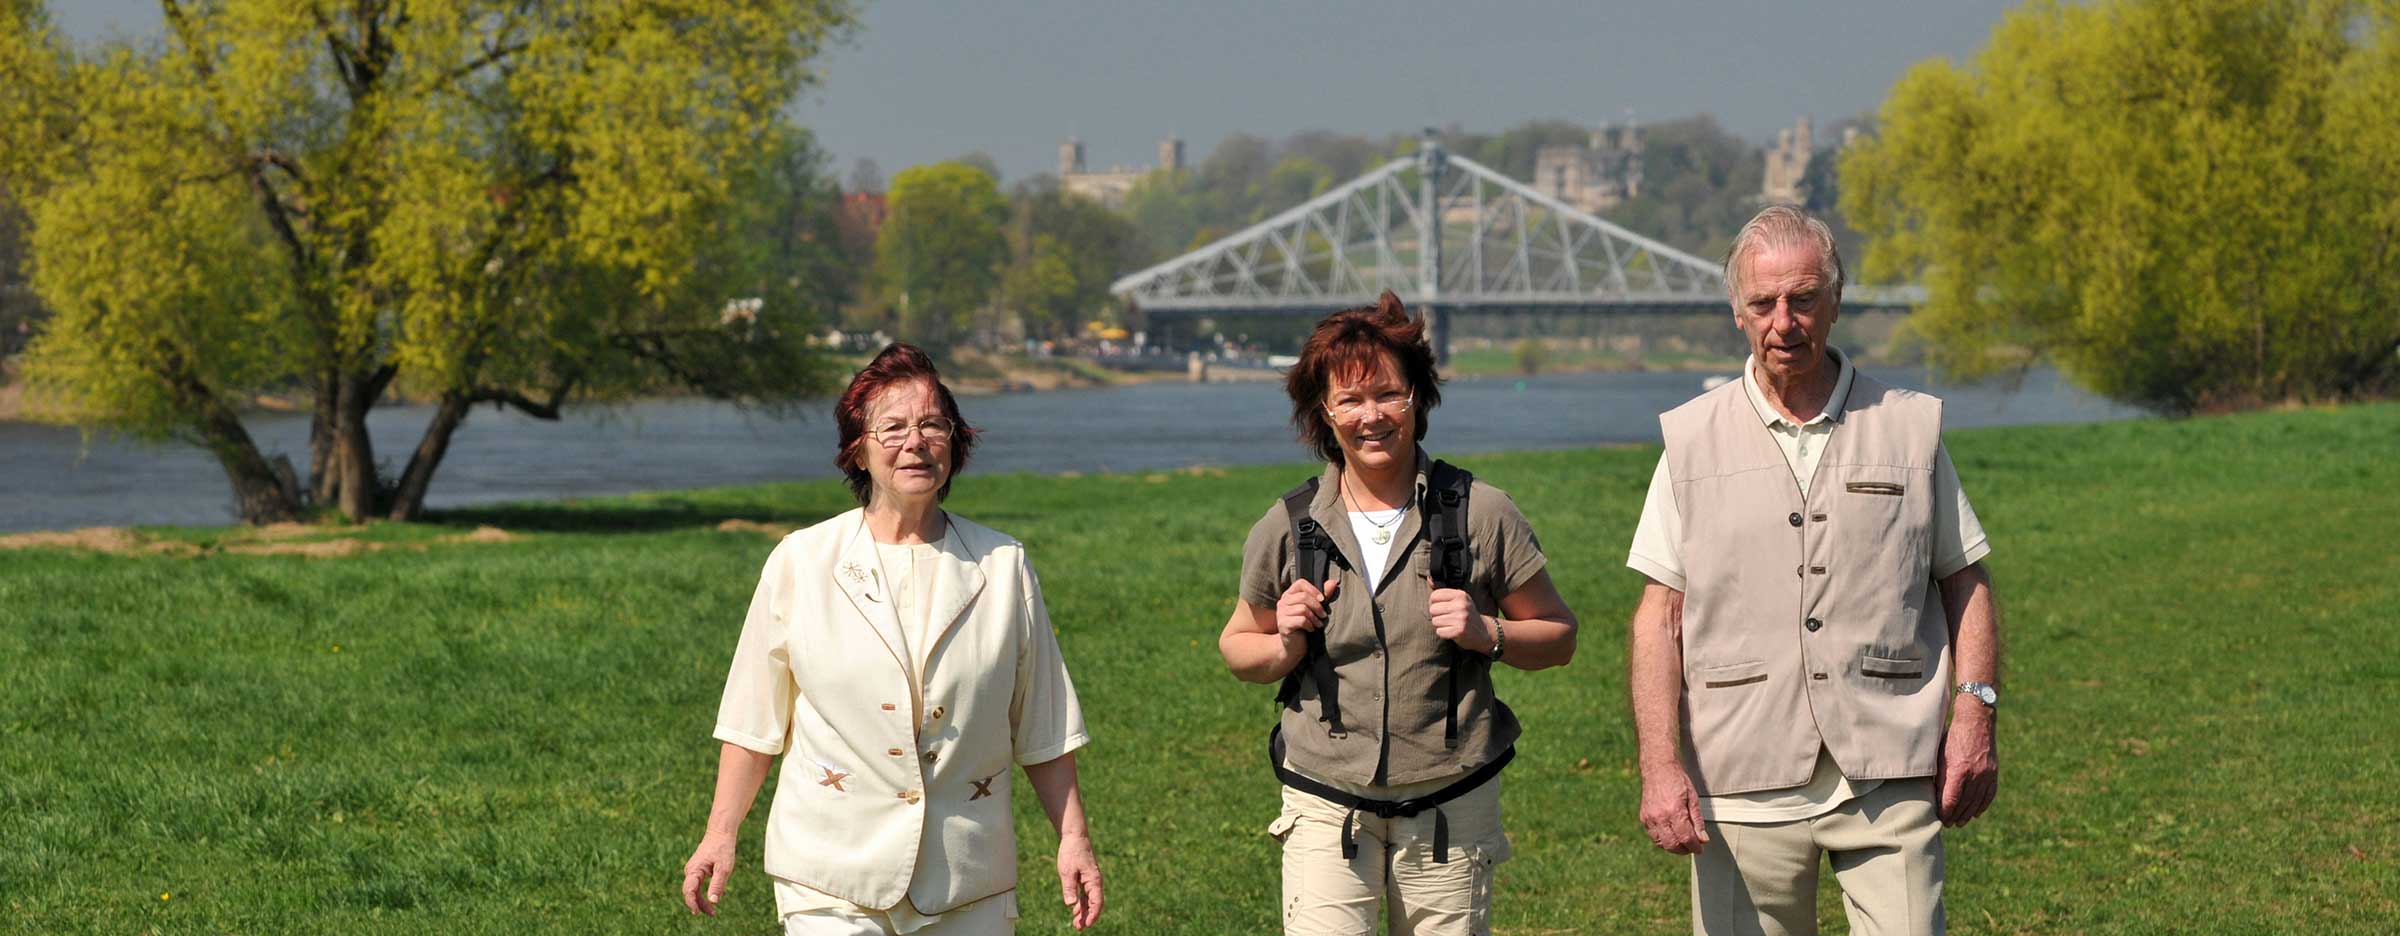 Zwei ältere Frauen und ein älterer Mann stehen auf der Wiese vor einem Fluss, im Hintergrund die Brücke Blaues Wunder